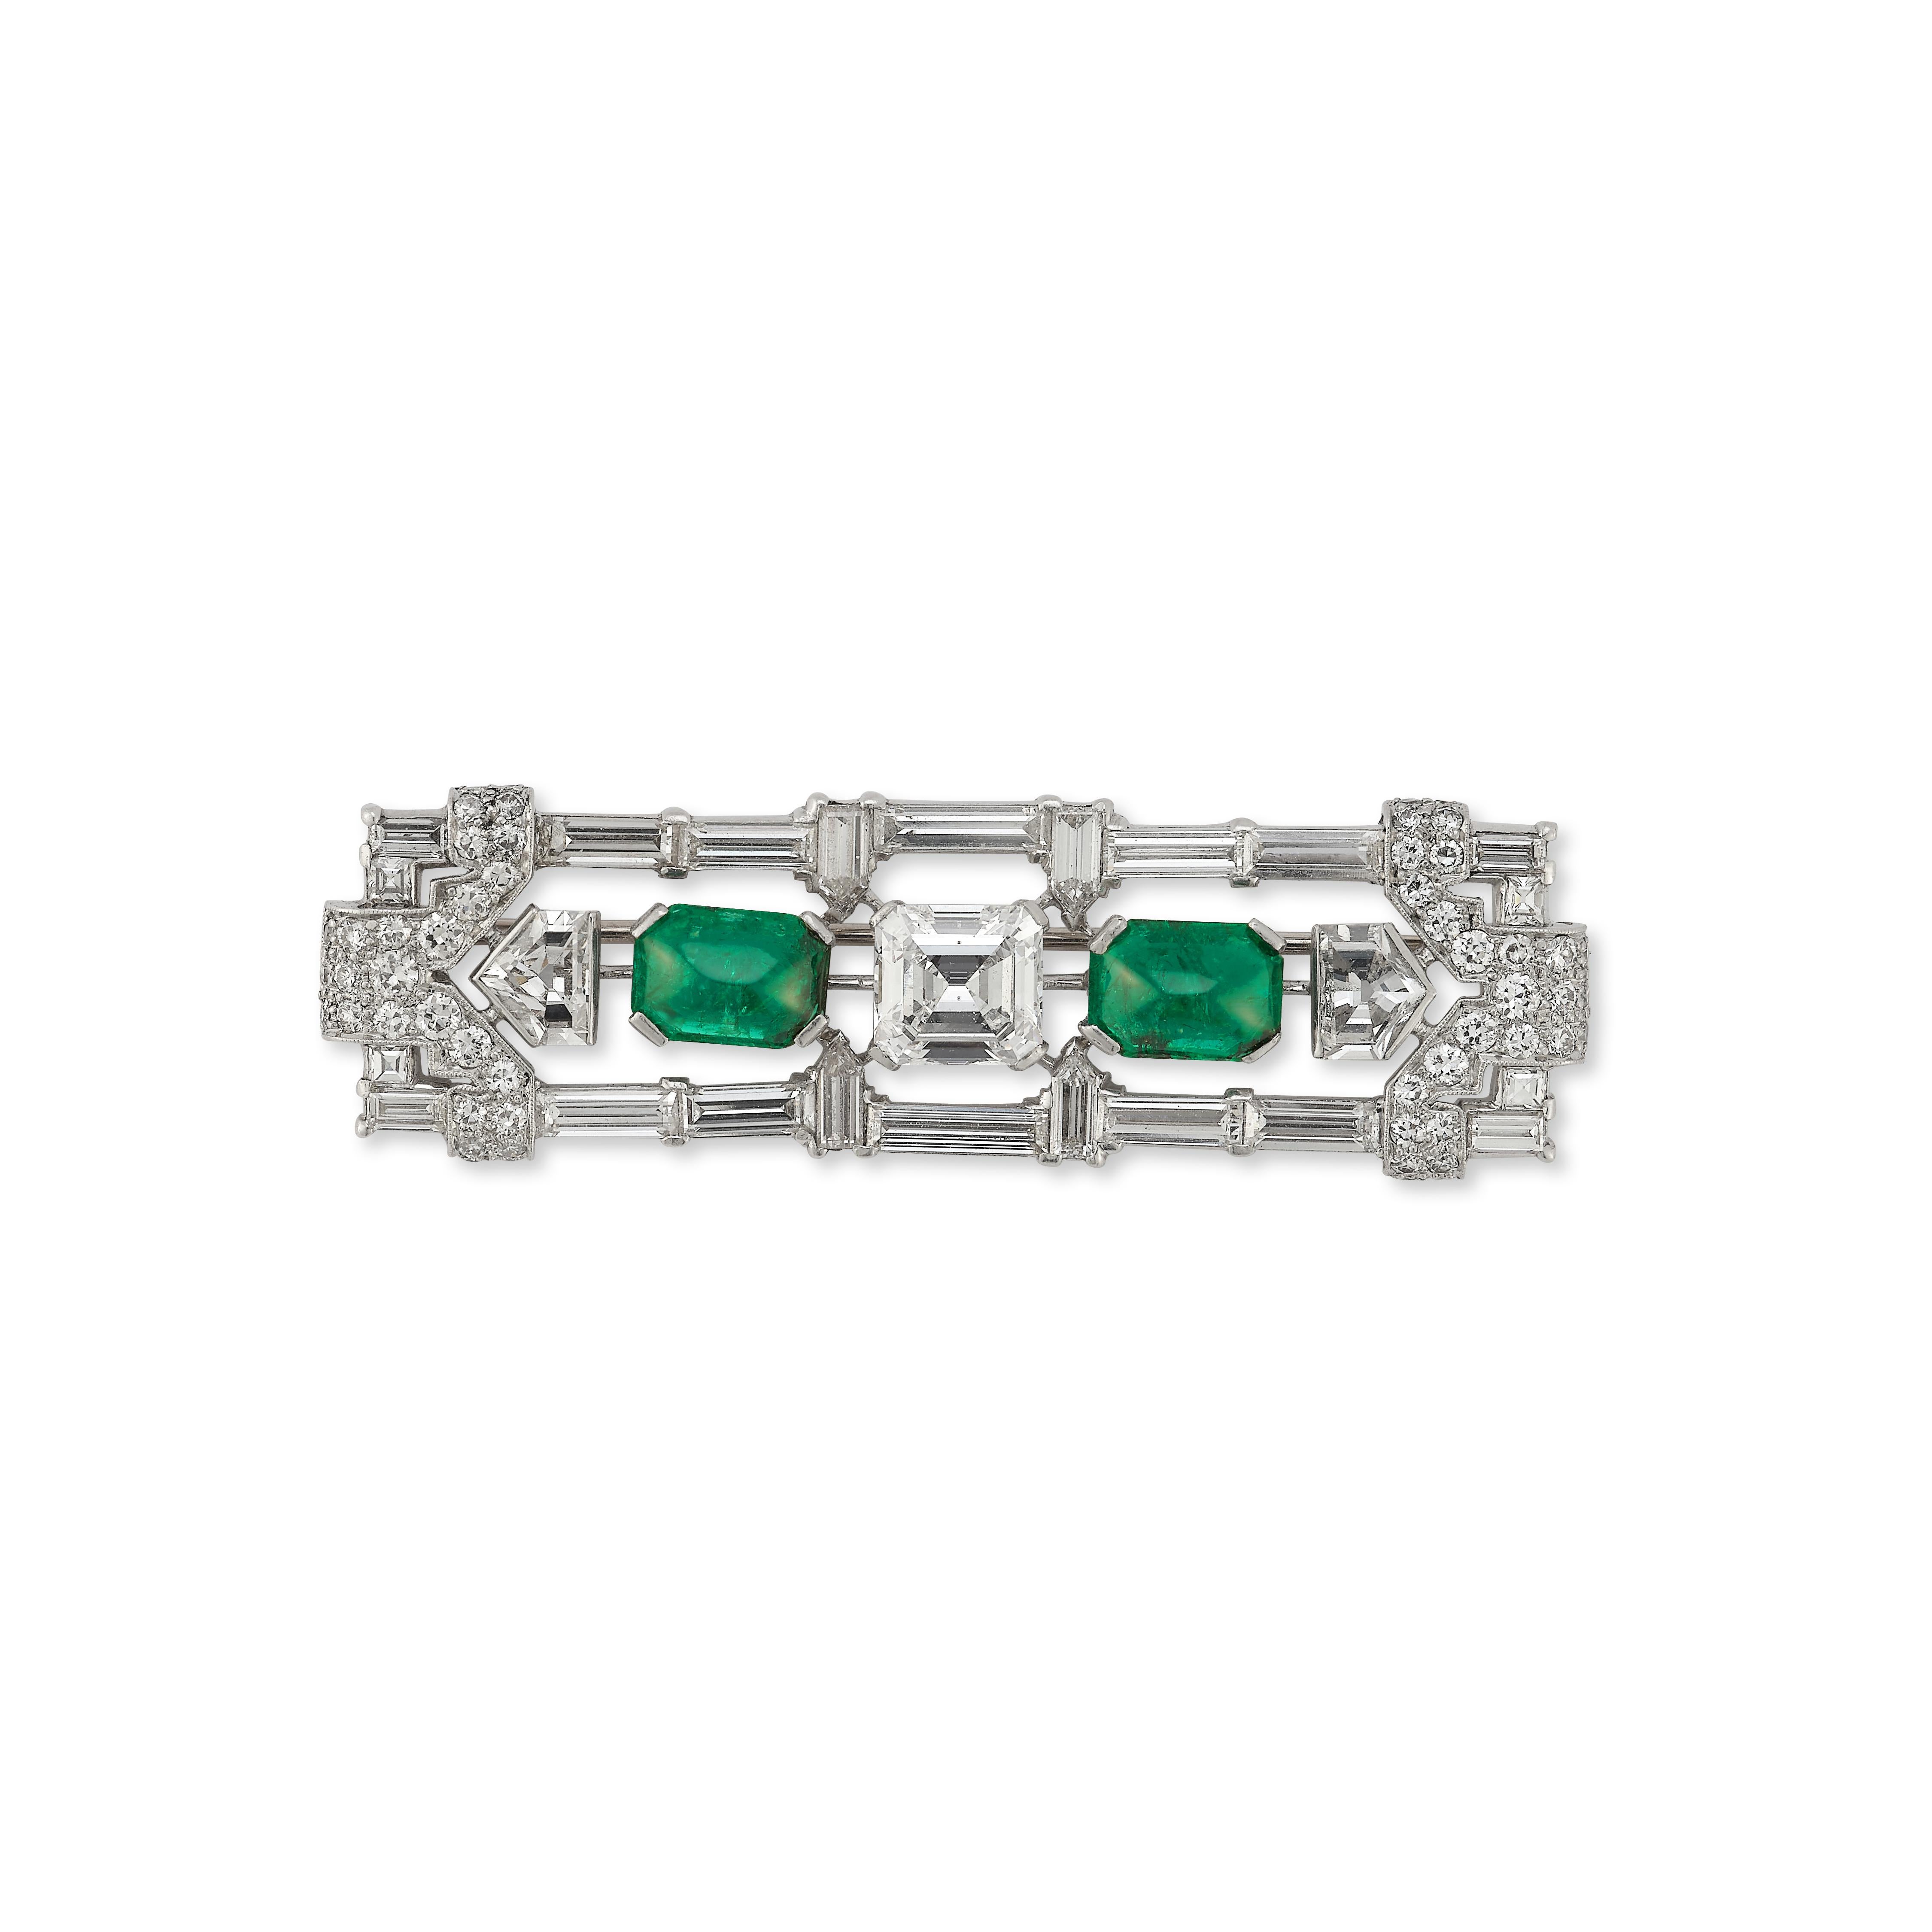 Brosche mit zertifiziertem Cabochon-Smaragd und Diamant im Art déco-Stil

Eine Platinbrosche, besetzt mit einem G-farbigen Diamanten im Smaragdschliff mit einem Reinheitsgrad von SI1 mit einem Gewicht von 2,10 Karat, 2 kolumbianischen Smaragden mit